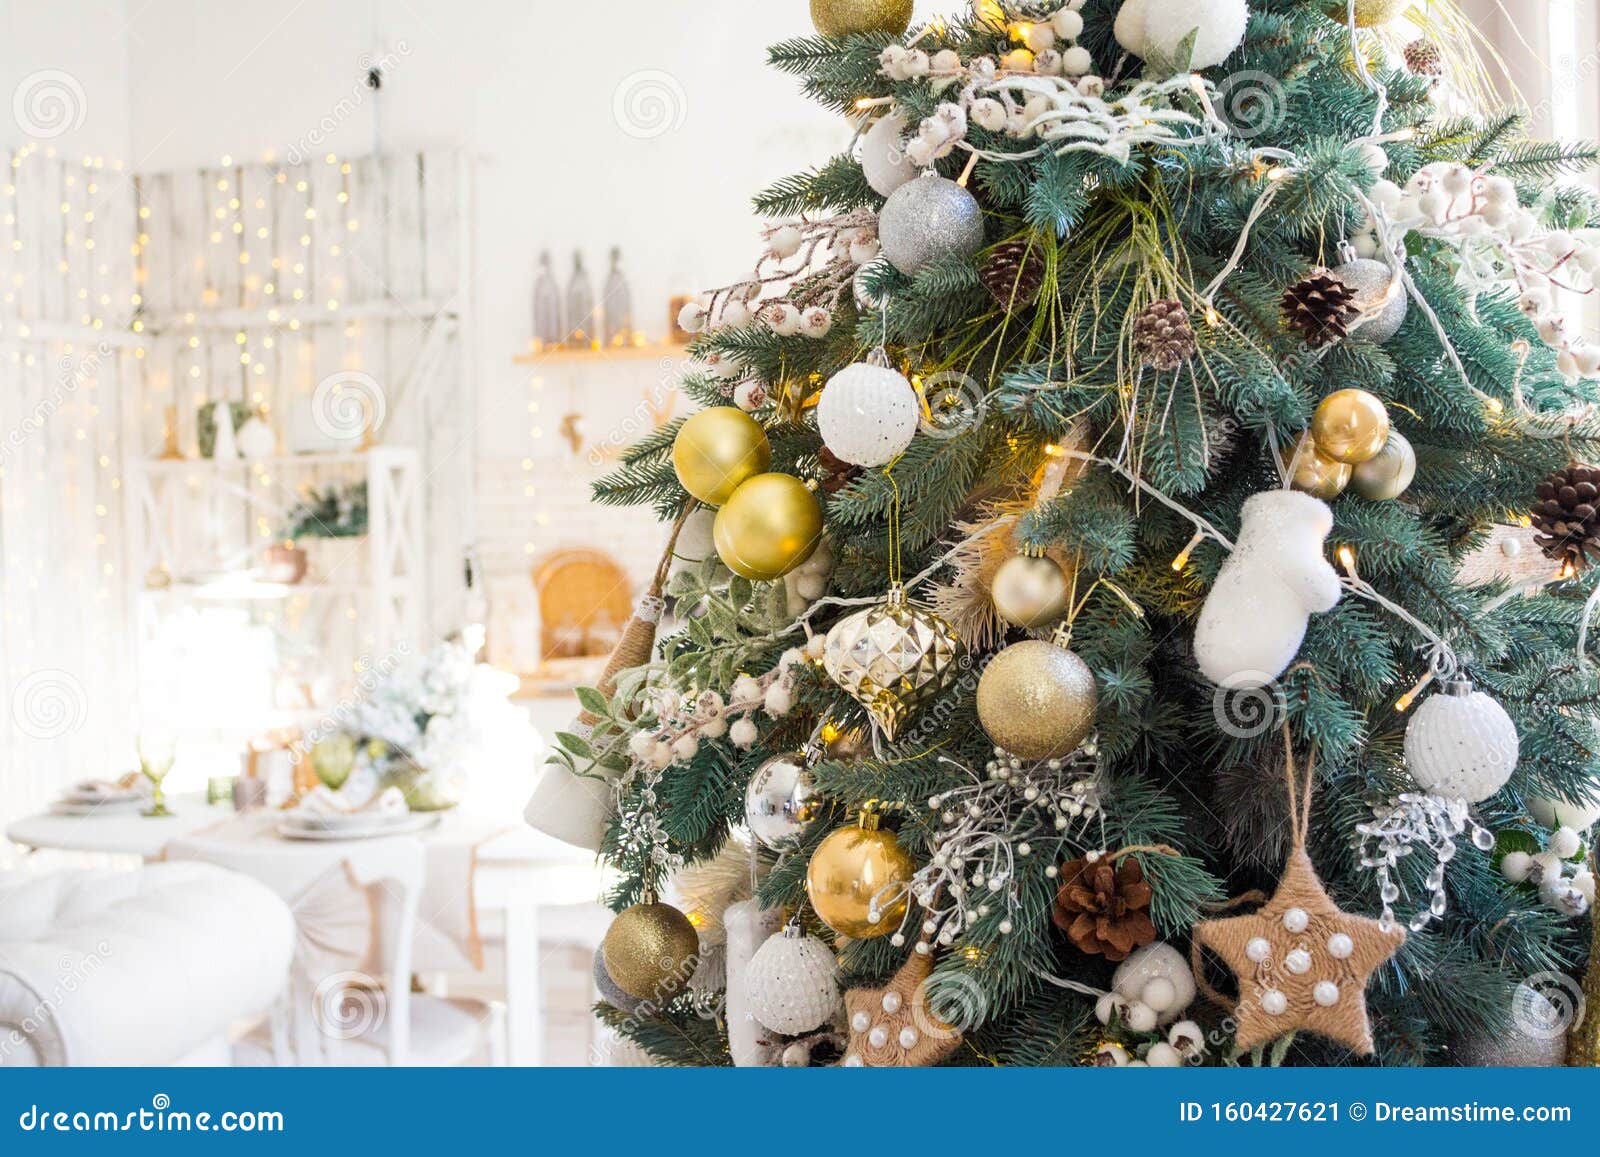 Kerstkamer Binnenontwerp, Kerstboom, Door Licht, Presenteert Speelgoed Goud, Kaarsen En Land, Spiegel Stock Afbeelding - Image of plattelandshuisje: 160427621